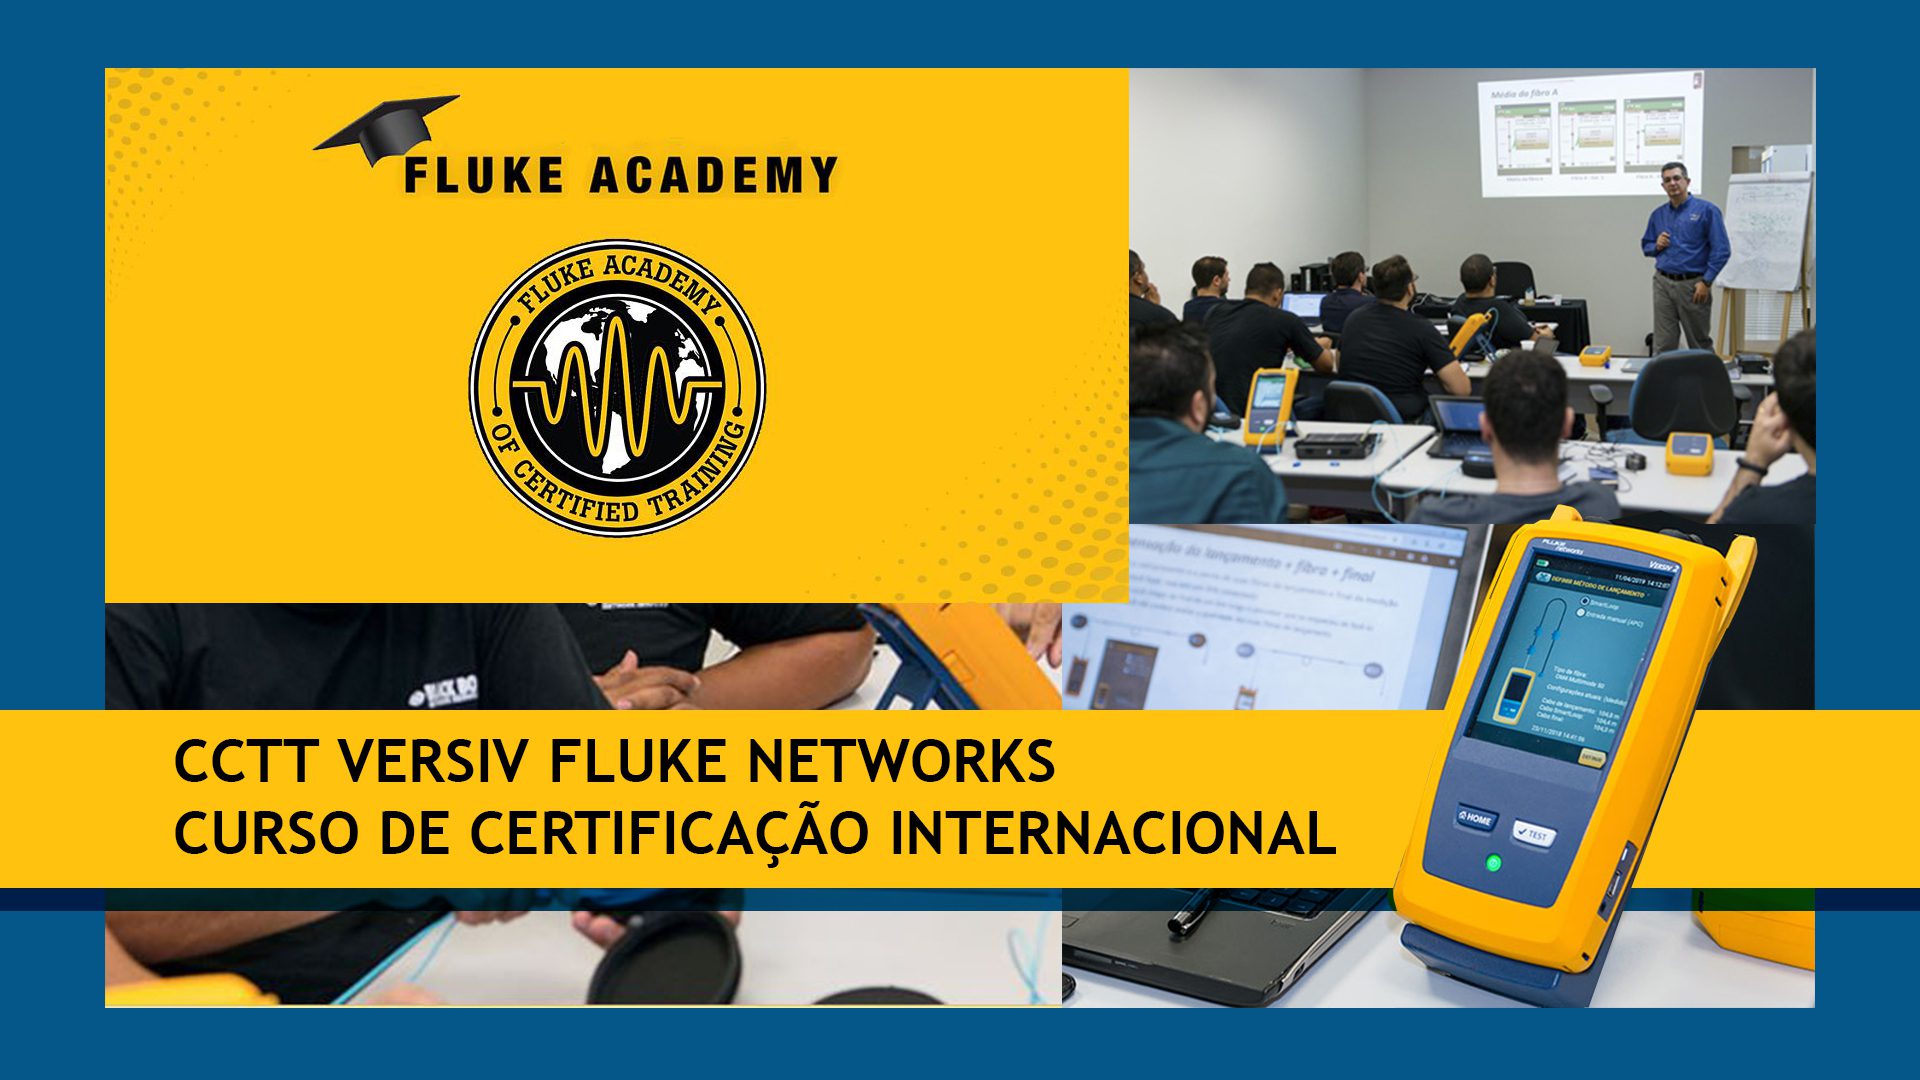 Facebook - Capa de Eventos fluke academy